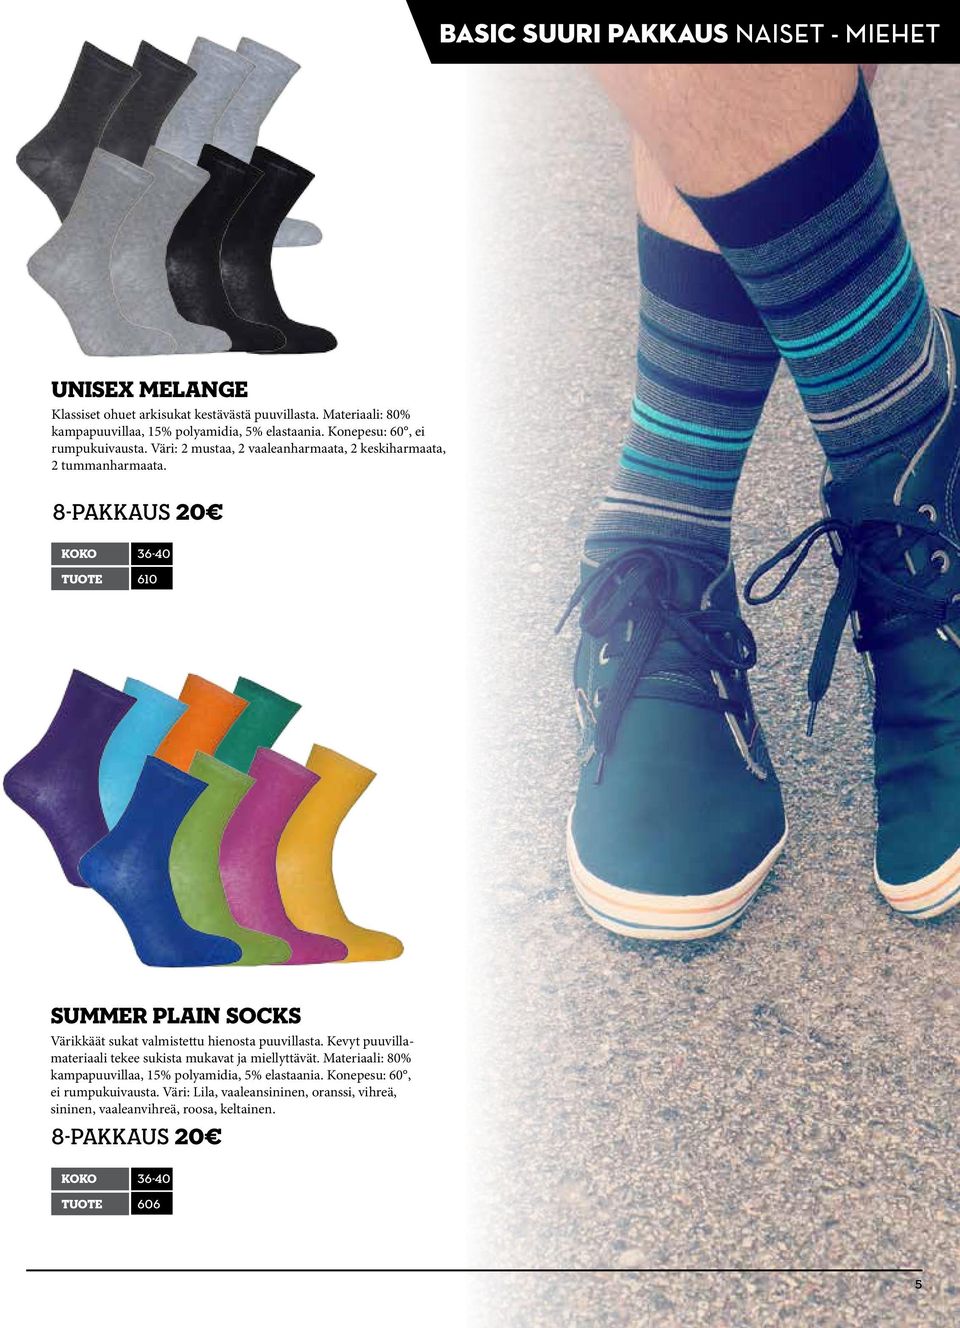 8-pakkaus 20 koko 36-40 tuote 610 Summer Plain socks Värikkäät sukat valmistettu hienosta puuvillasta.